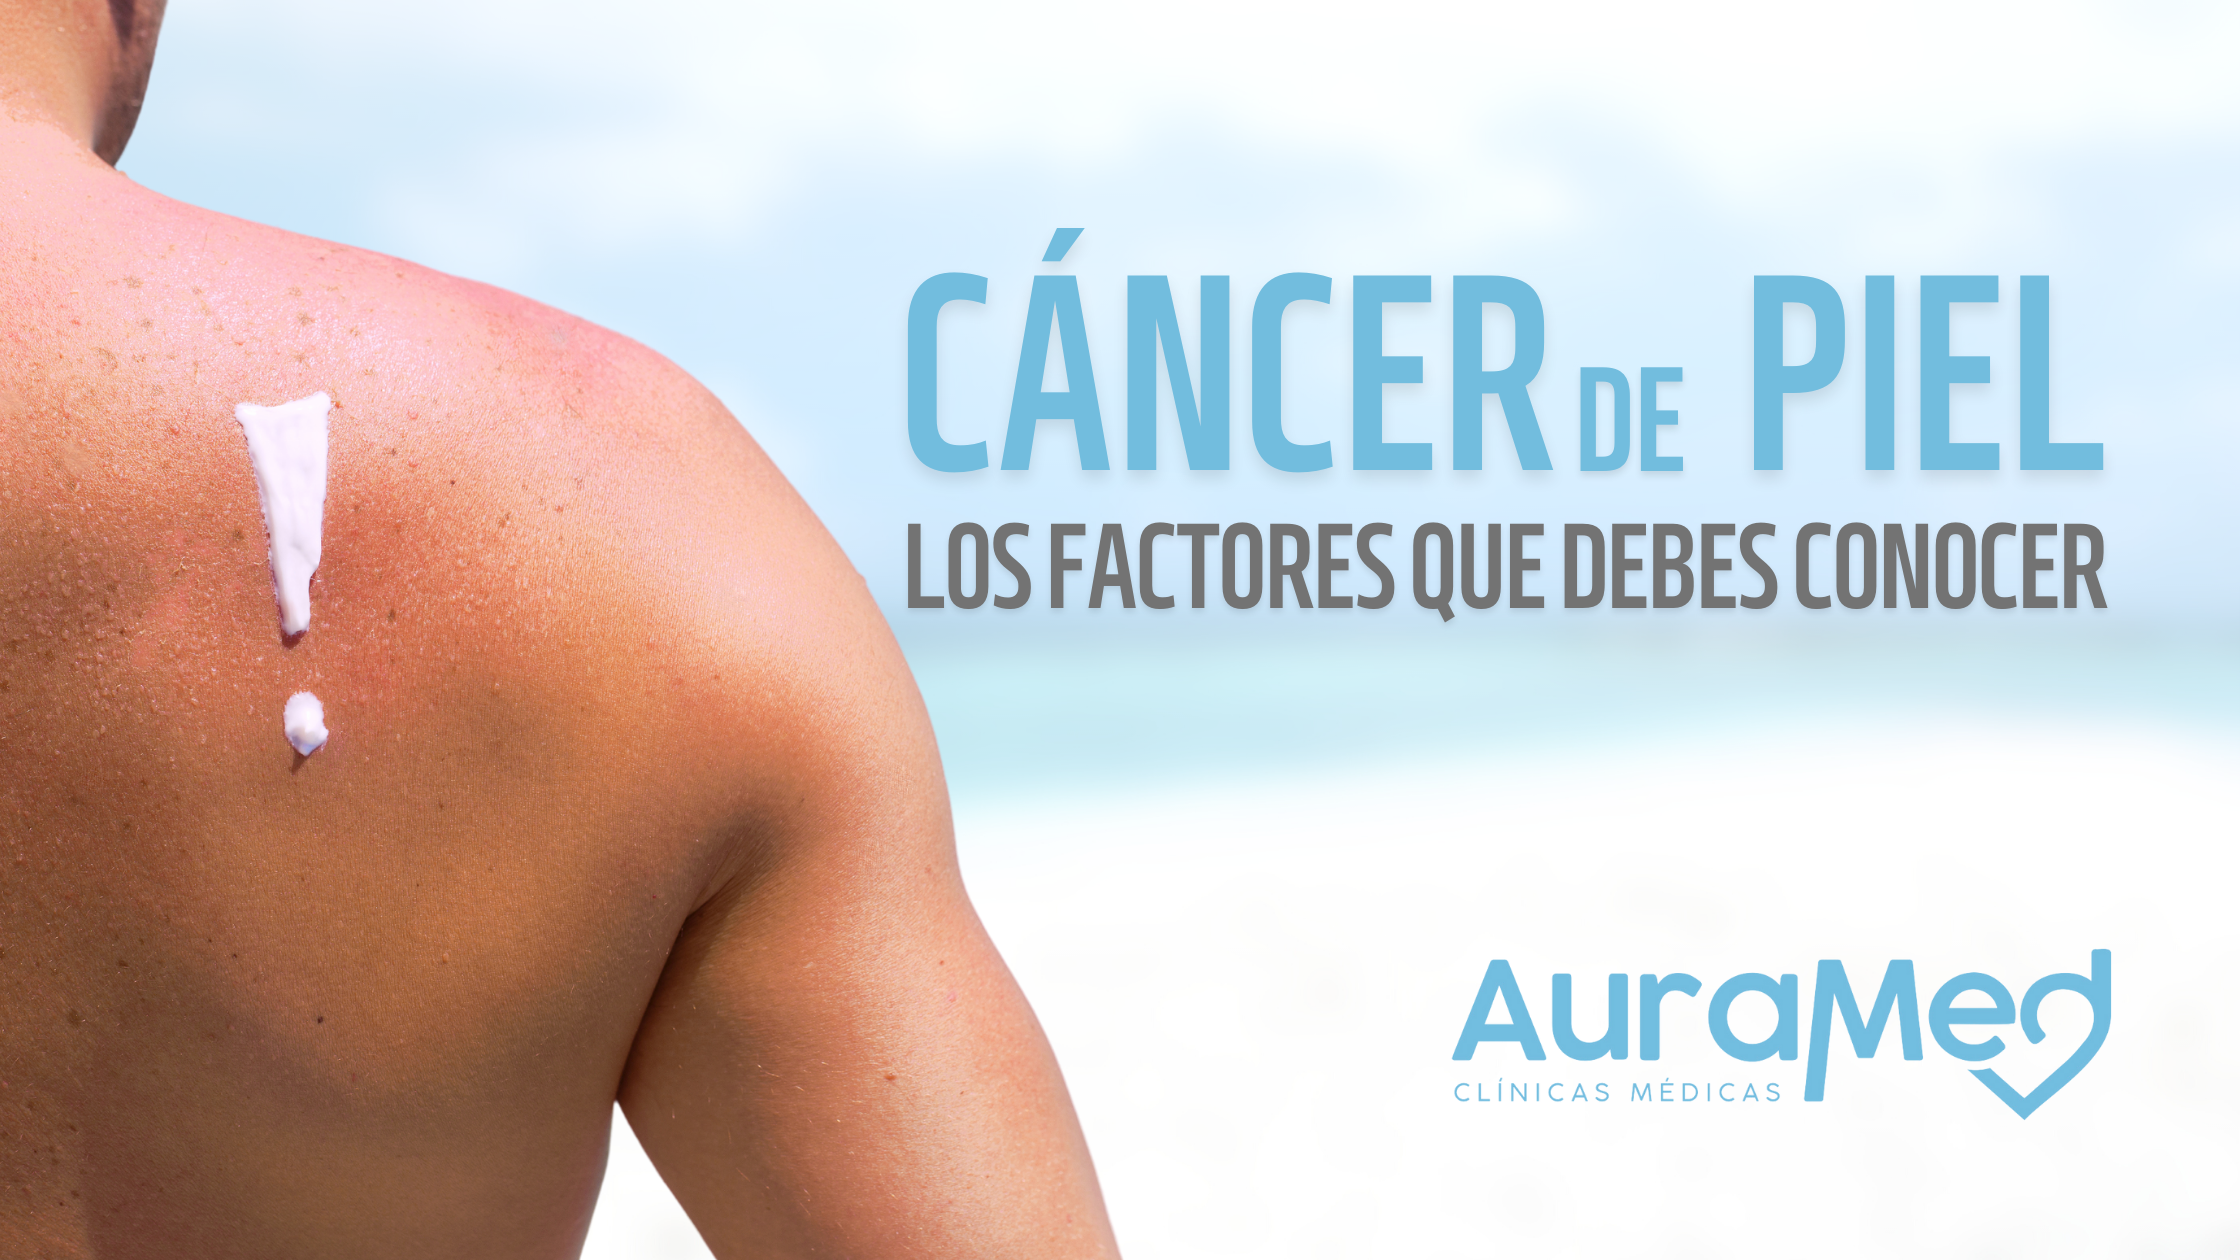 Auraned como prevenir cancer de piel